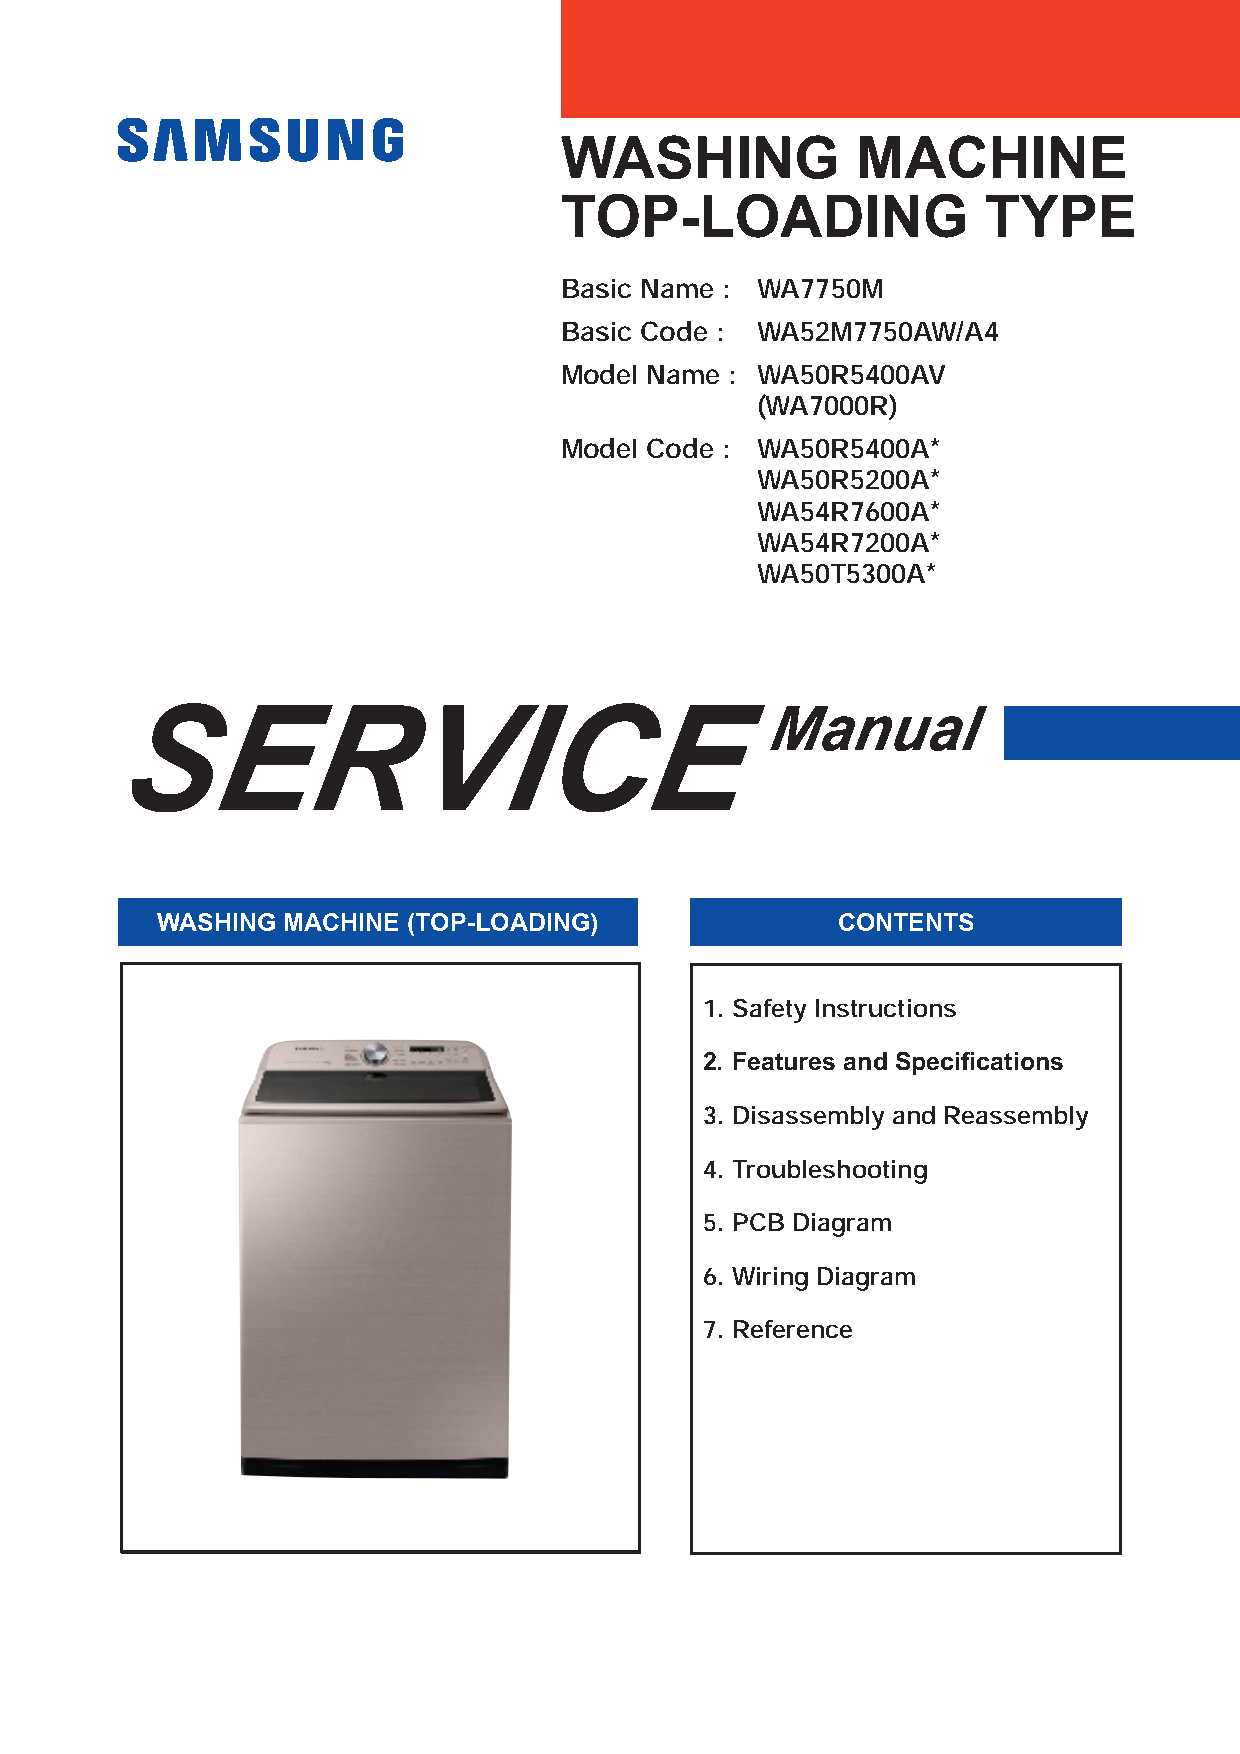 Samsung WA50T5300A Service Manual